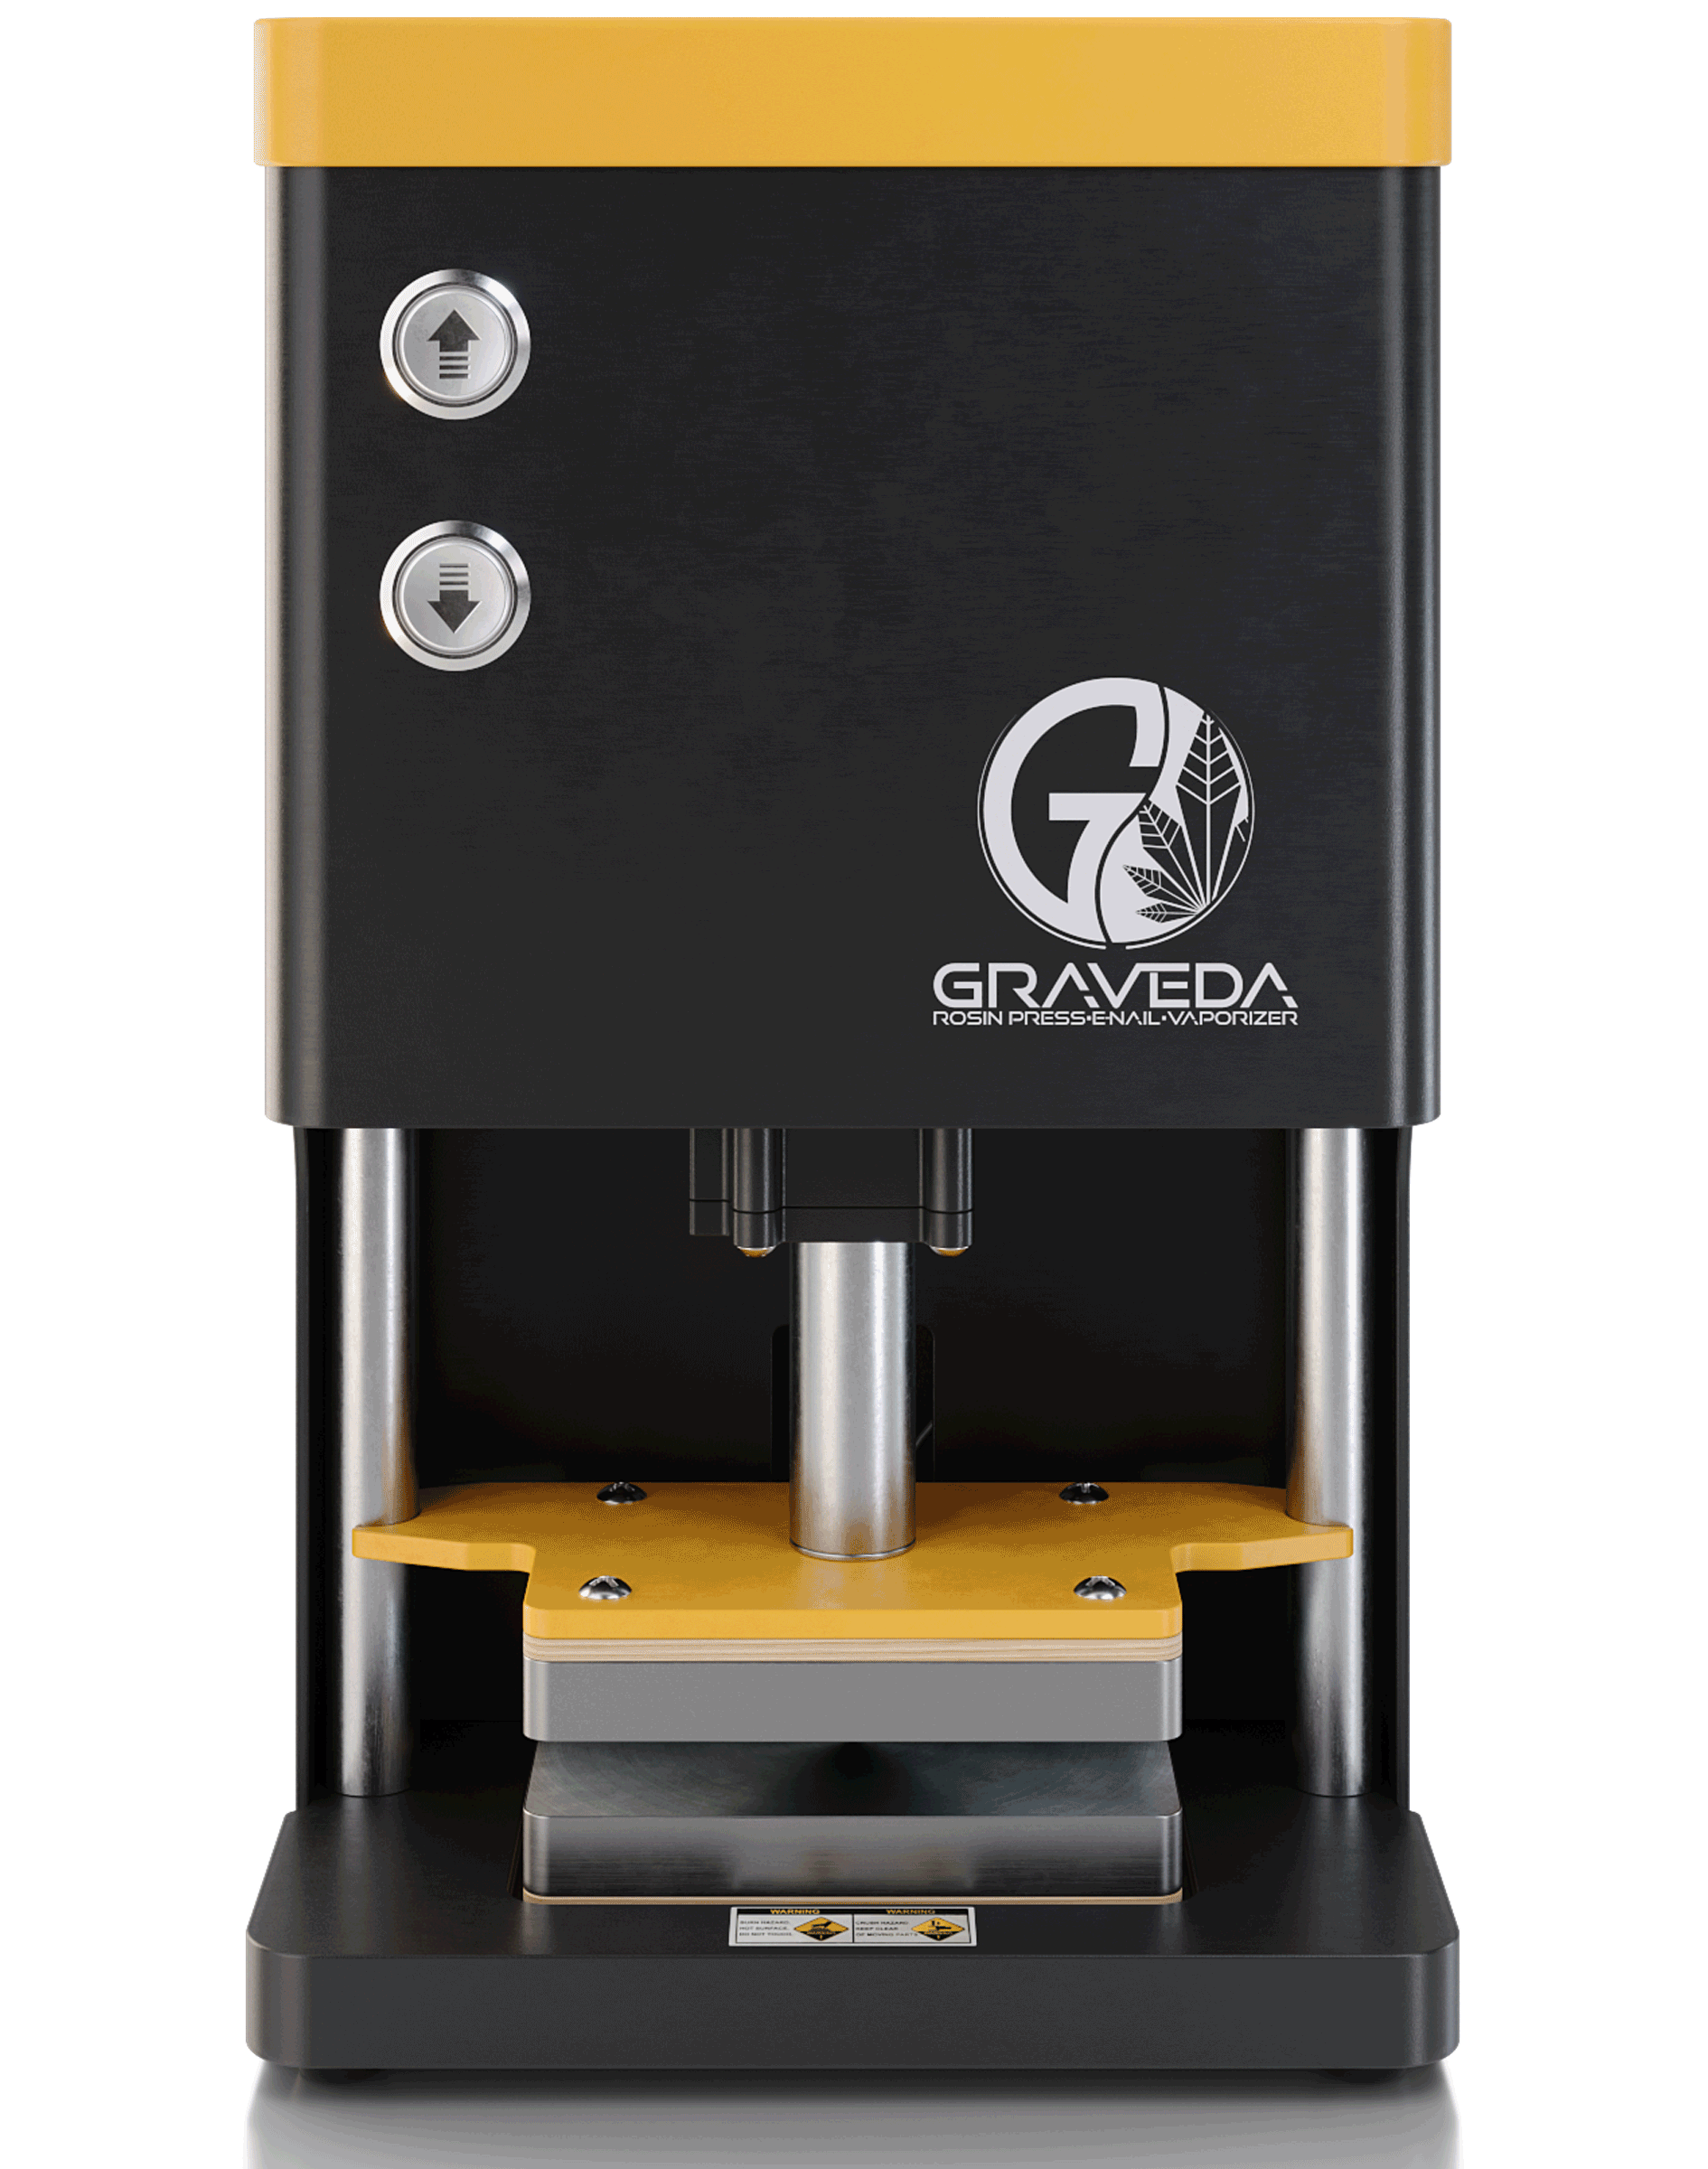 Graspresso 1 Tonne - Rosinpresse mit elekrischem Hydraulikzylinder, Kolophonium Presse